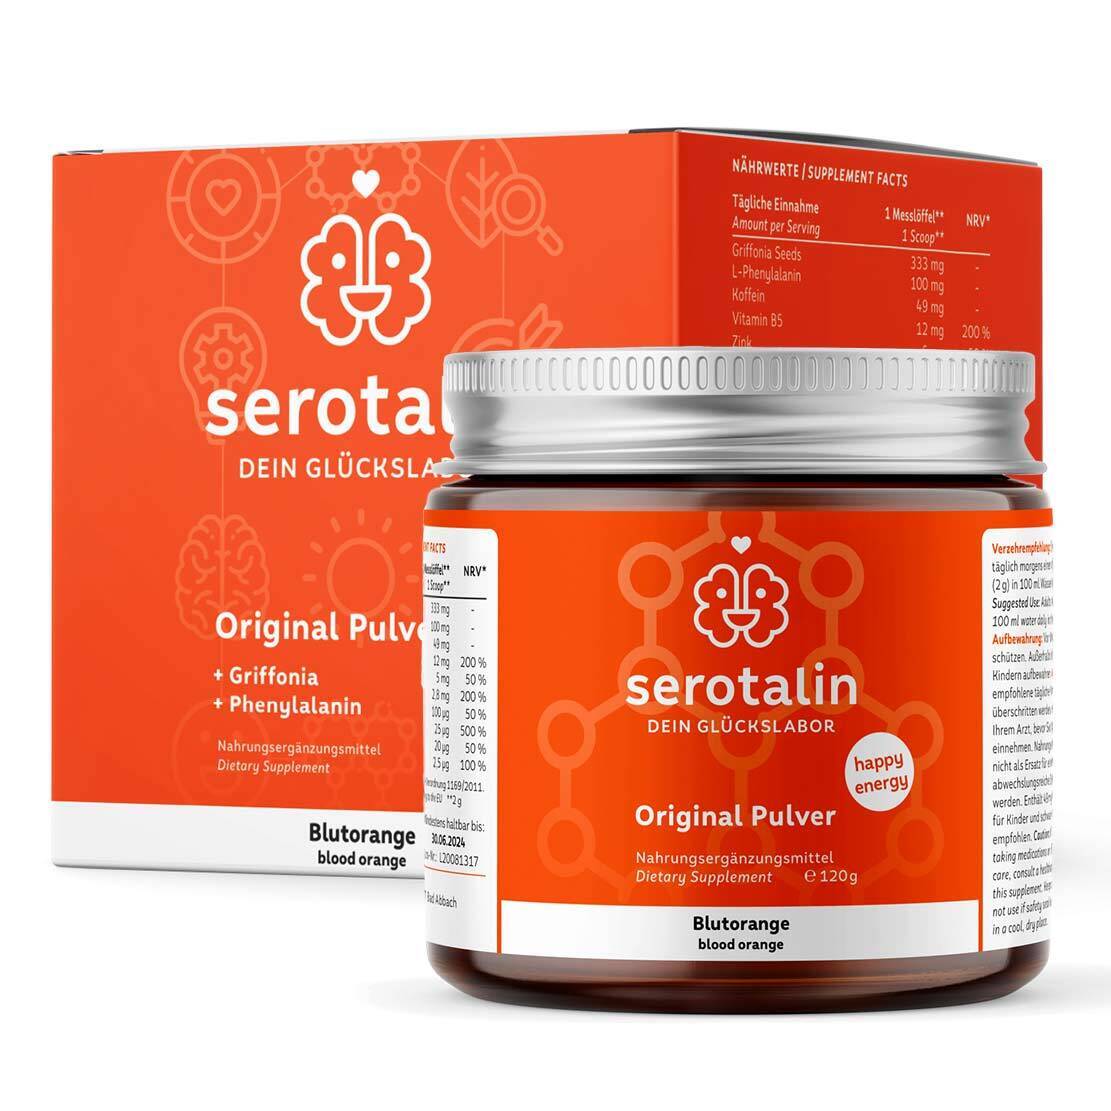 Serotalin Original Pulver | 120g | schnelle Wirksamkeit | einfache Einnahme ohne Kapsel | laborgeprüft | vegan